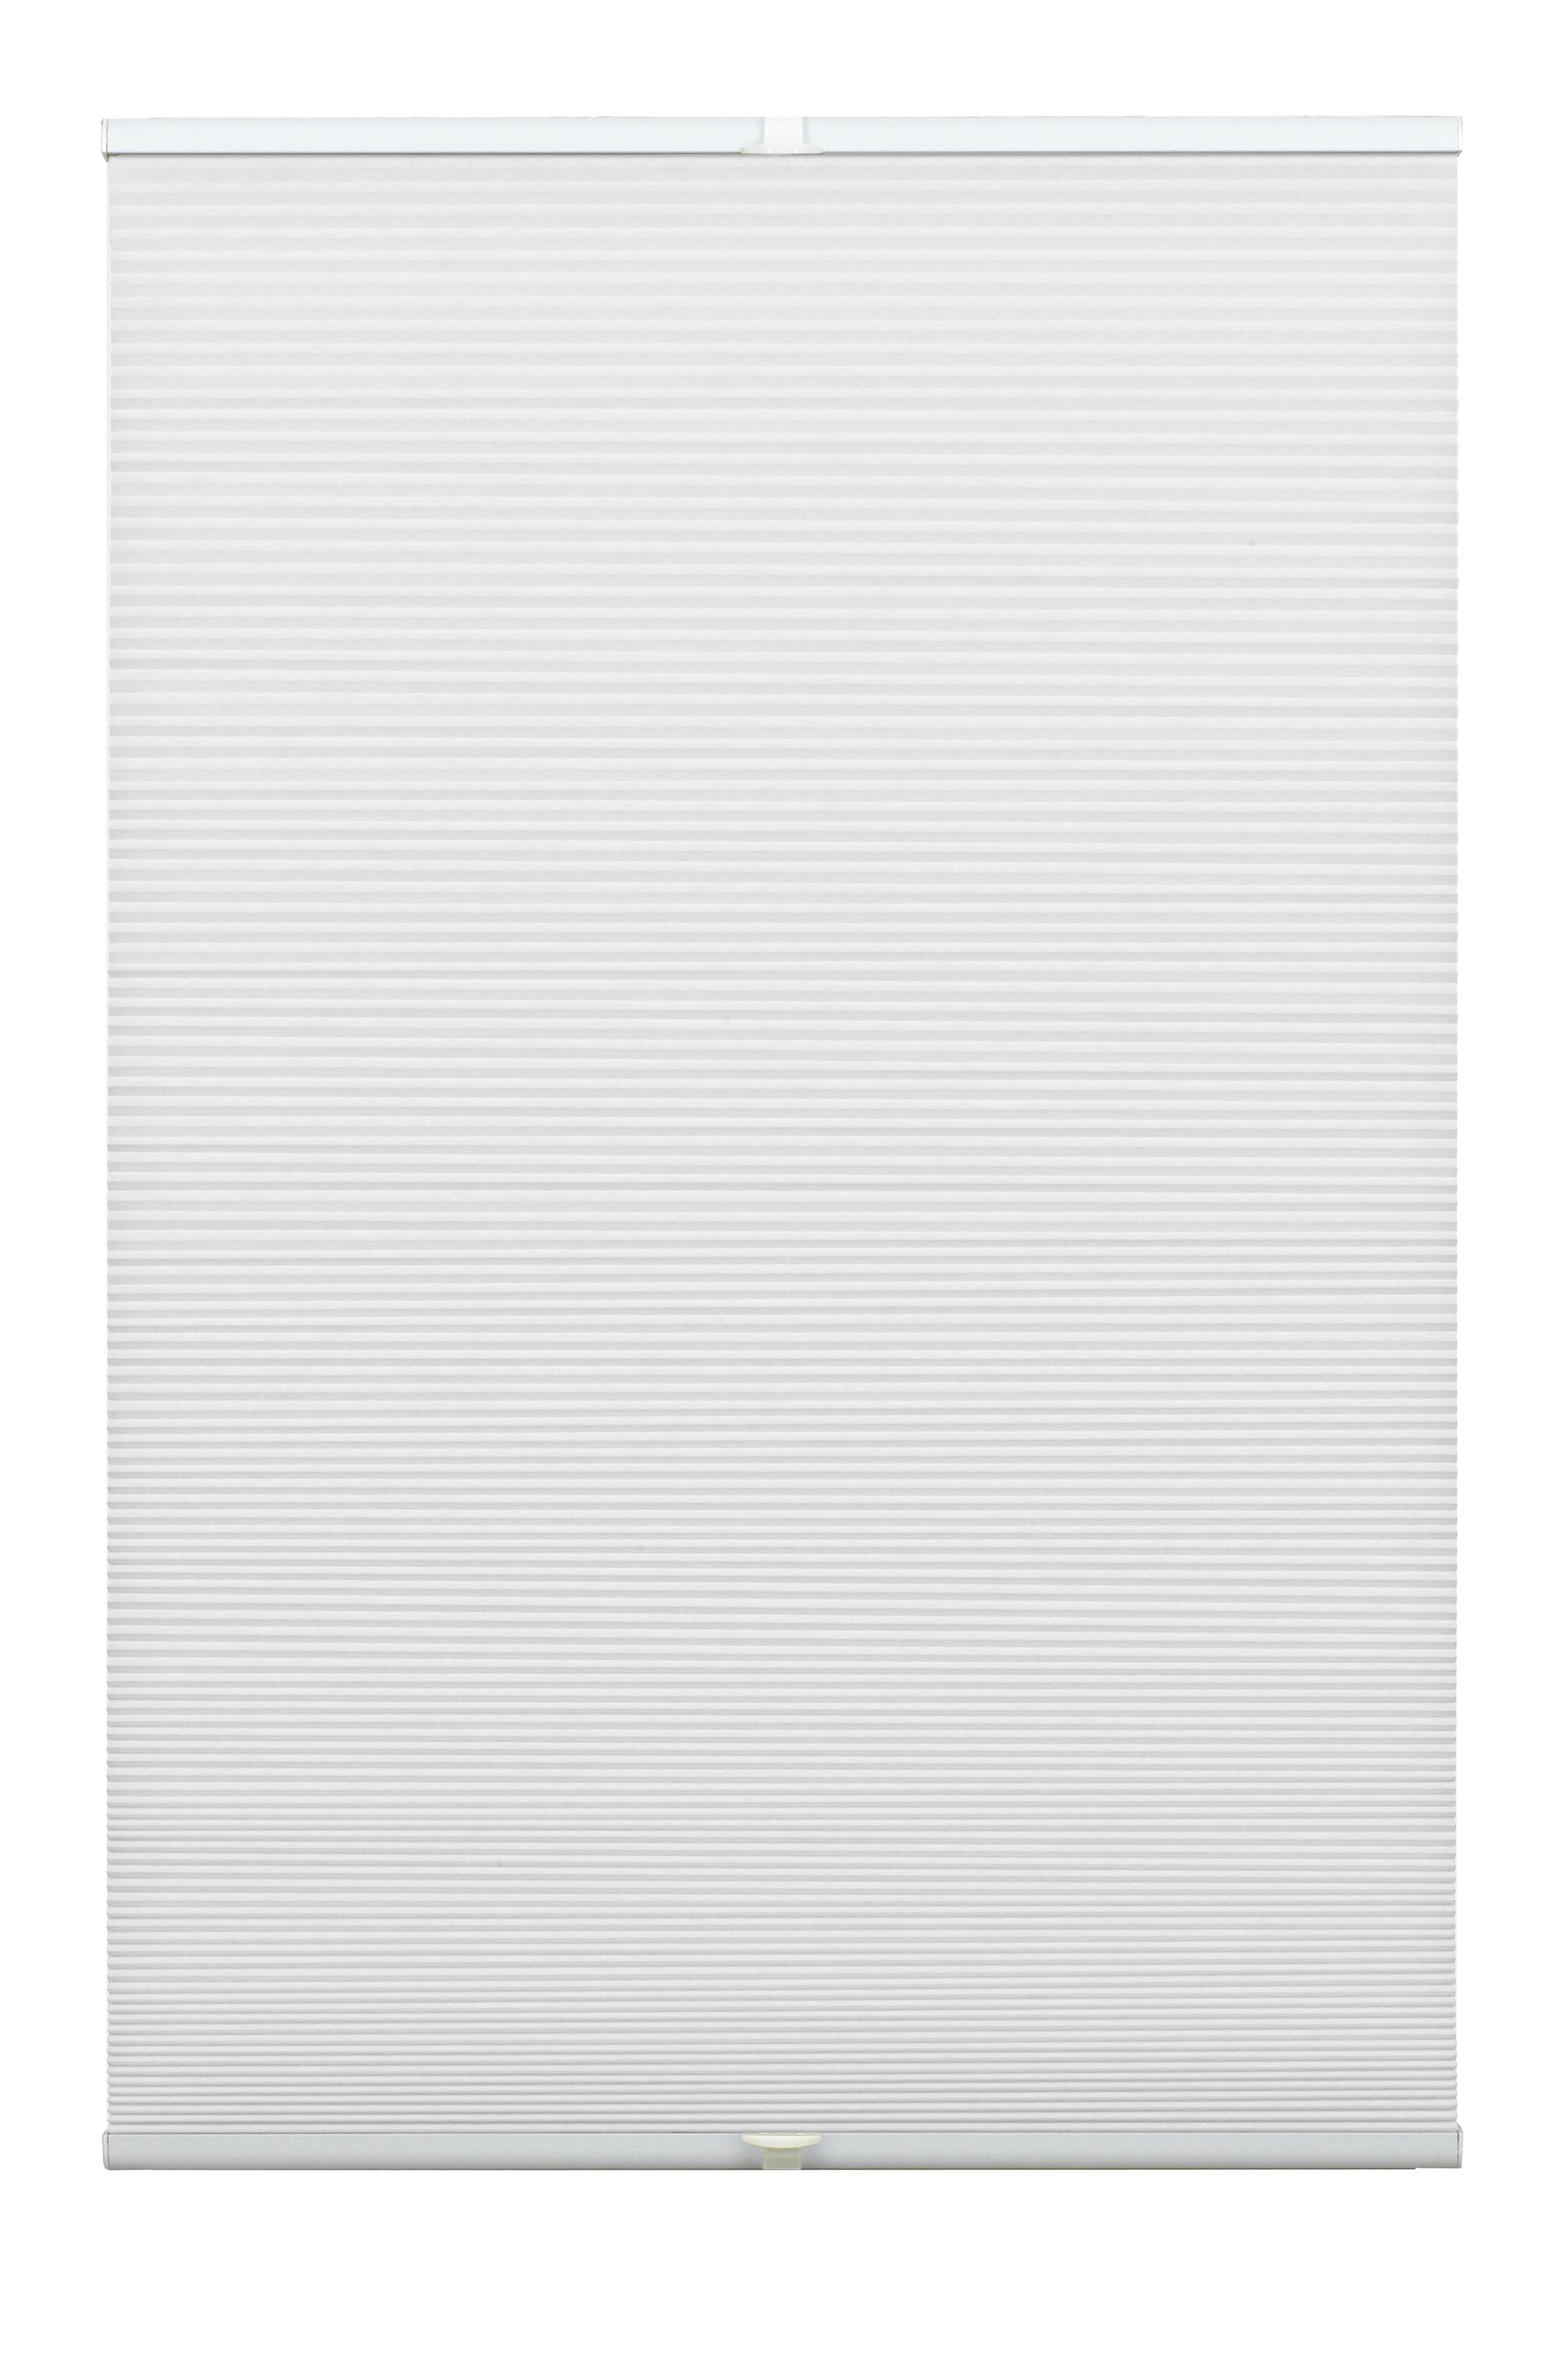 Plisé Concept Waben Termo se dvěma ovládacími profily, 90x130cm, bílá (100% polyestervlies, neprůsvitná, 25mm dutinkové plisování. Zvuková a v zimě i v létě tepelná izolace. Individuálně nastavitená výška díky dvěma ovládacím hliníkovým profilům, včetně 2